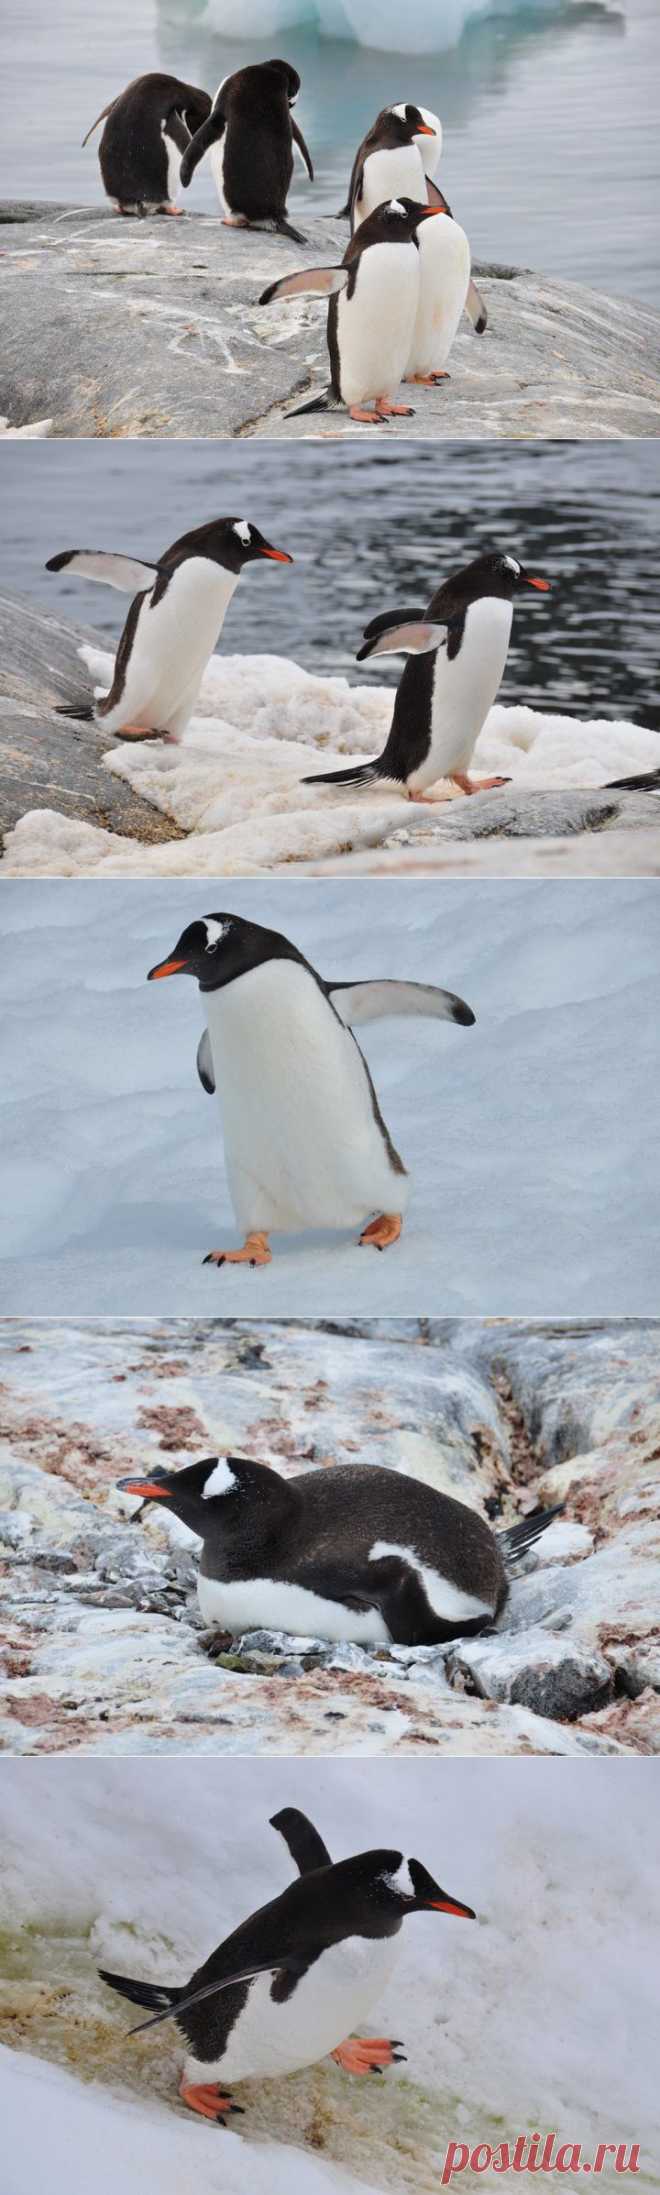 Немногие достопримечательности Антарктиды: лед, снег, пингвины и морские львы | Непутевые заметки